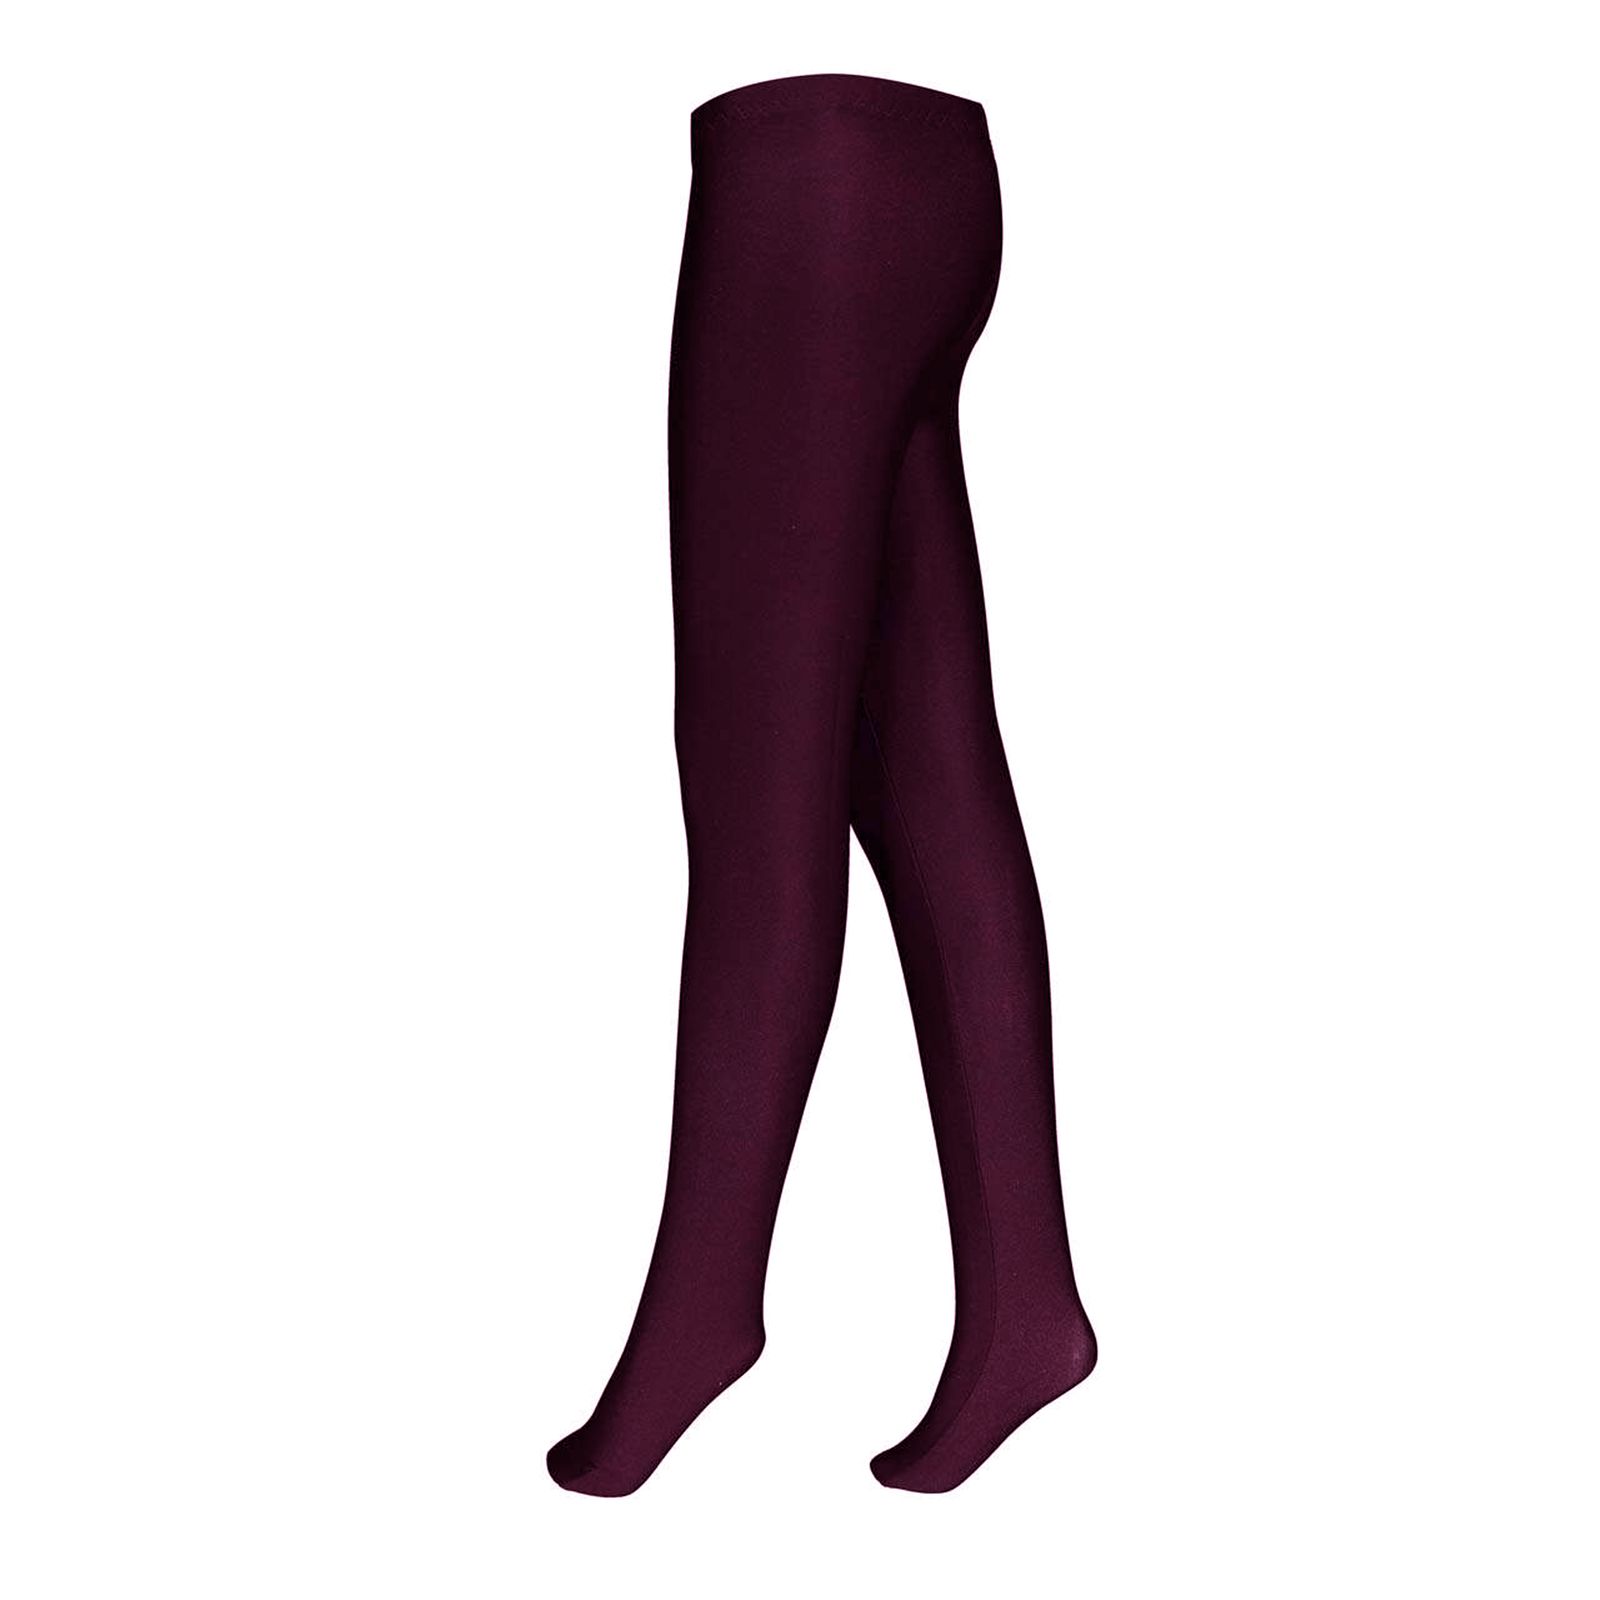 جوراب شلواری زنانه چیبو مدل PrP5489 رنگ بادمجانی -  - 1